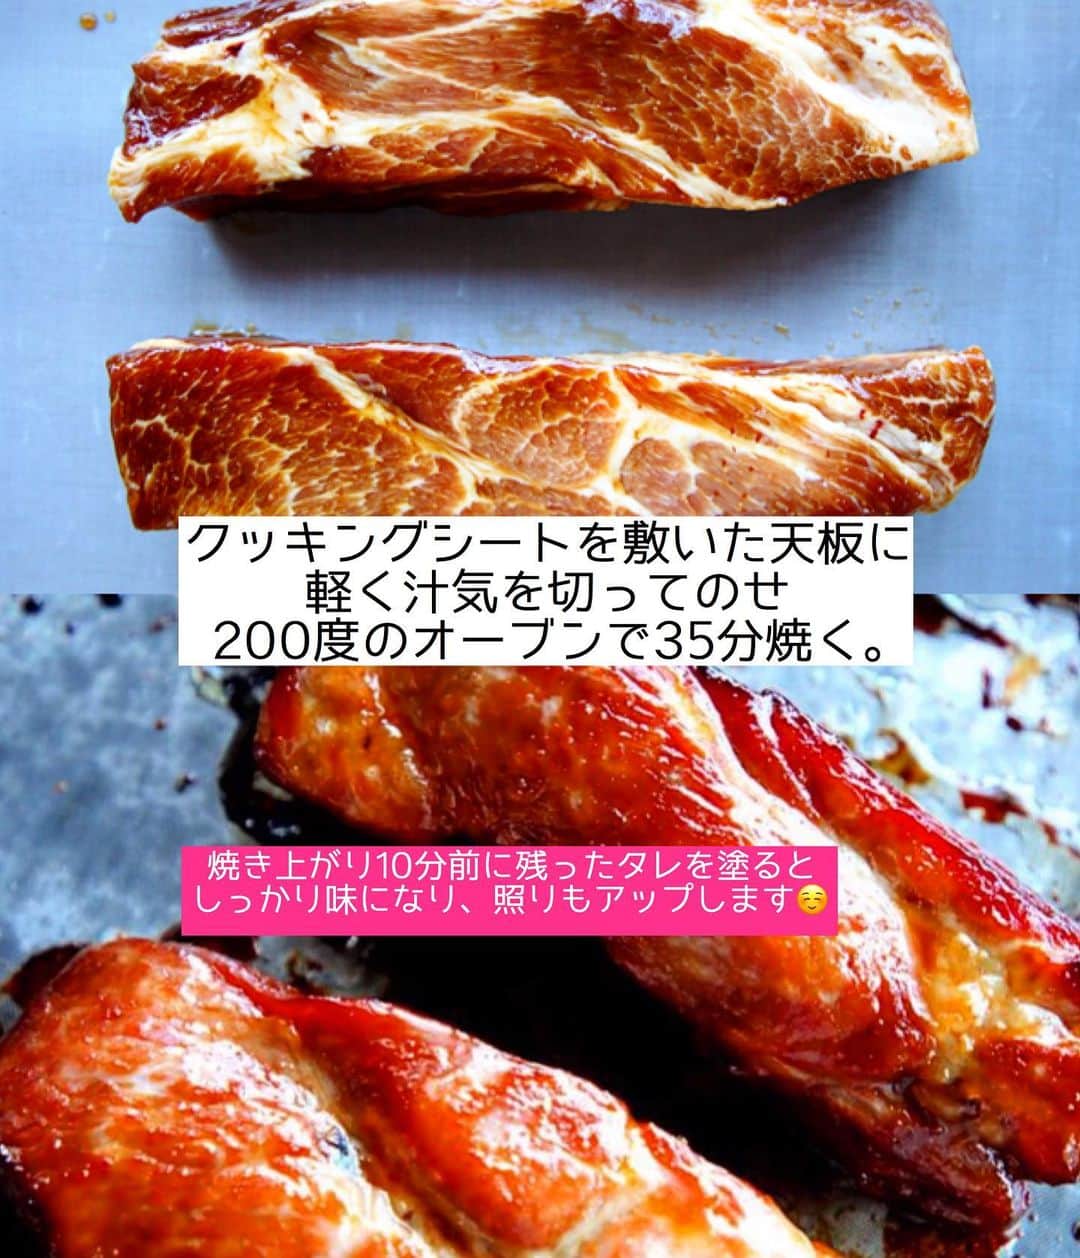 Mizuki【料理ブロガー・簡単レシピ】さんのインスタグラム写真 - (Mizuki【料理ブロガー・簡単レシピ】Instagram)「・﻿ 【#レシピ 】ーーーーーーー﻿ 漬けて焼くだけ！本格焼豚﻿ ーーーーーーーーーーーーー﻿ ﻿ ﻿ ﻿ おはようございます(*^^*)﻿ ﻿ 今日はお正月料理にもおすすめの﻿ 焼豚をご紹介させていただきます♩﻿ 一見手間がかかりそうですが﻿ 実は超〜簡単に作れますよ(*´艸`)﻿ ﻿ というのも﻿ \\漬けてやくだけ//﻿ ﻿ 甘めの調味料に漬け込み﻿ こんがりジューシーに仕上げました♩﻿ 今回は肩ロースを使用していますが﻿ ばら肉やヒレ肉でもOKです(*^^*)﻿ ﻿ そのまま食べるのはもちろん﻿ ラーメンのトッピングや焼豚丼﻿ チャーハンの具にしても最高ですよ〜♡﻿ ﻿ ﻿ ﻿ ＿＿＿＿＿＿＿＿＿＿＿＿＿＿＿＿＿＿＿＿﻿ 【4人分】﻿ 豚かたまり肉(肩ロース)...400〜500g﻿ ●醤油...60ml﻿ ●砂糖...大4﻿ ●味噌・オイスターソース...各小1﻿ ●生姜チューブ...3cm﻿ ﻿ 1.豚肉は縦半分に切り、全体をフォークで刺す。●と共にポリ袋に入れてよく揉み、冷蔵庫で一晩漬ける。﻿ 2.クッキングシートを敷いた天板に、1を軽く汁気を切ってのせ、200度に予熱したオーブンで35分焼く。(焼き上がり10分前に残ったたれを塗るとしっかり味に&照りアップ！)﻿ ￣￣￣￣￣￣￣￣￣￣￣￣￣￣￣￣￣￣￣￣﻿ ﻿ ﻿ ﻿ 《ポイント》﻿ ♦︎ お好みの厚さにスライスして召し上がれ♩﻿ ♦︎今回は脂身のバランスがよい肩ロース肉を使用しています♩ばら肉で作るとよりジューシーに、ヒレ肉だとヘルシーな仕上がりに♩﻿ ♦︎残ったら冷蔵で4日、冷凍で1カ月は保存可能です♩﻿ ﻿ ﻿ ﻿ ﻿ ﻿ ﻿ 今日はクリスマスイブですね〜🎄✨🎁﻿ 皆さんが素敵な時間を過ごせますように💕﻿ ﻿ ﻿ ﻿ ﻿ ﻿ ﻿ ﻿ ﻿ 📕新刊発売中📕﻿ 【ラクしておいしい！#1品晩ごはん 】﻿ ￣￣￣￣￣￣￣￣￣￣￣￣￣￣￣￣￣﻿ 私たちだってヘトヘトな日がある•••﻿ 毎日何品も作っていられない•••﻿ もうごはんに悩みたくない😢﻿ そんな時、1品ごはんはいかがでしょう？﻿ というご提案です✨﻿ ﻿ 【1品ごはん】は﻿ 副菜いらずで全てがシンプル！﻿ ￣￣￣￣￣￣￣￣￣￣￣￣￣￣￣￣￣￣﻿ 一品つくるだけでいいから﻿ 献立を考えなくてよし！﻿ ￣￣￣￣￣￣￣￣￣￣￣￣￣￣￣￣￣￣﻿ 悩まない、疲れない、﻿ 気力や時間がなくてもなんとかなる！﻿ ￣￣￣￣￣￣￣￣￣￣￣￣￣￣￣￣￣￣﻿ そんな頼りになる﻿ 便利なお助けごはんです☺️💕﻿ (ハイライトに🔗貼っています✨)﻿ ￣￣￣￣￣￣￣￣￣￣￣￣￣￣￣￣￣﻿ ﻿ ﻿ ﻿ ﻿ ﻿ ⭐️発売中⭐️﻿ ＿＿＿＿＿＿＿＿＿＿＿＿＿＿＿＿＿＿﻿ しんどくない献立、考えました♩﻿ \15分でいただきます/﻿ 📕#Mizukiの2品献立 📕﻿ ﻿ 和食をもっとカジュアルに♩﻿ \毎日のごはんがラクになる/﻿ 📘#Mizukiの今どき和食 📘﻿ ﻿ ホケミレシピの決定版♩﻿ \はじめてでも失敗しない/﻿ 📙ホットケーキミックスのお菓子 📙﻿ ﻿ NHKまる得マガジンテキスト☆﻿ ホットケーキミックスで﻿ 📗絶品おやつ&意外なランチ📗﻿ ￣￣￣￣￣￣￣￣￣￣￣￣￣￣￣￣￣￣﻿ ﻿ ﻿ ﻿ ＿＿＿＿＿＿＿＿＿＿＿＿＿＿＿＿＿＿﻿ レシピを作って下さった際や﻿ レシピ本についてのご投稿には﻿ タグ付け( @mizuki_31cafe )して﻿ お知らせいただけると嬉しいです😊💕﻿ ￣￣￣￣￣￣￣￣￣￣￣￣￣￣￣￣￣￣﻿ ﻿ ﻿ ﻿ ﻿ #焼豚#チャーシュー#焼き豚#おせち料理#Mizuki#簡単レシピ#時短レシピ#節約レシピ#料理#フーディーテーブル#マカロニメイト#おうちごはん#デリスタグラマー#料理好きな人と繋がりたい#食べ物#料理記録#おうちごはんlover#写真好きな人と繋がりたい#foodpic#cooking#recipe#lin_stagrammer#foodporn#yummy#f52grams#本格焼豚m」12月24日 6時27分 - mizuki_31cafe